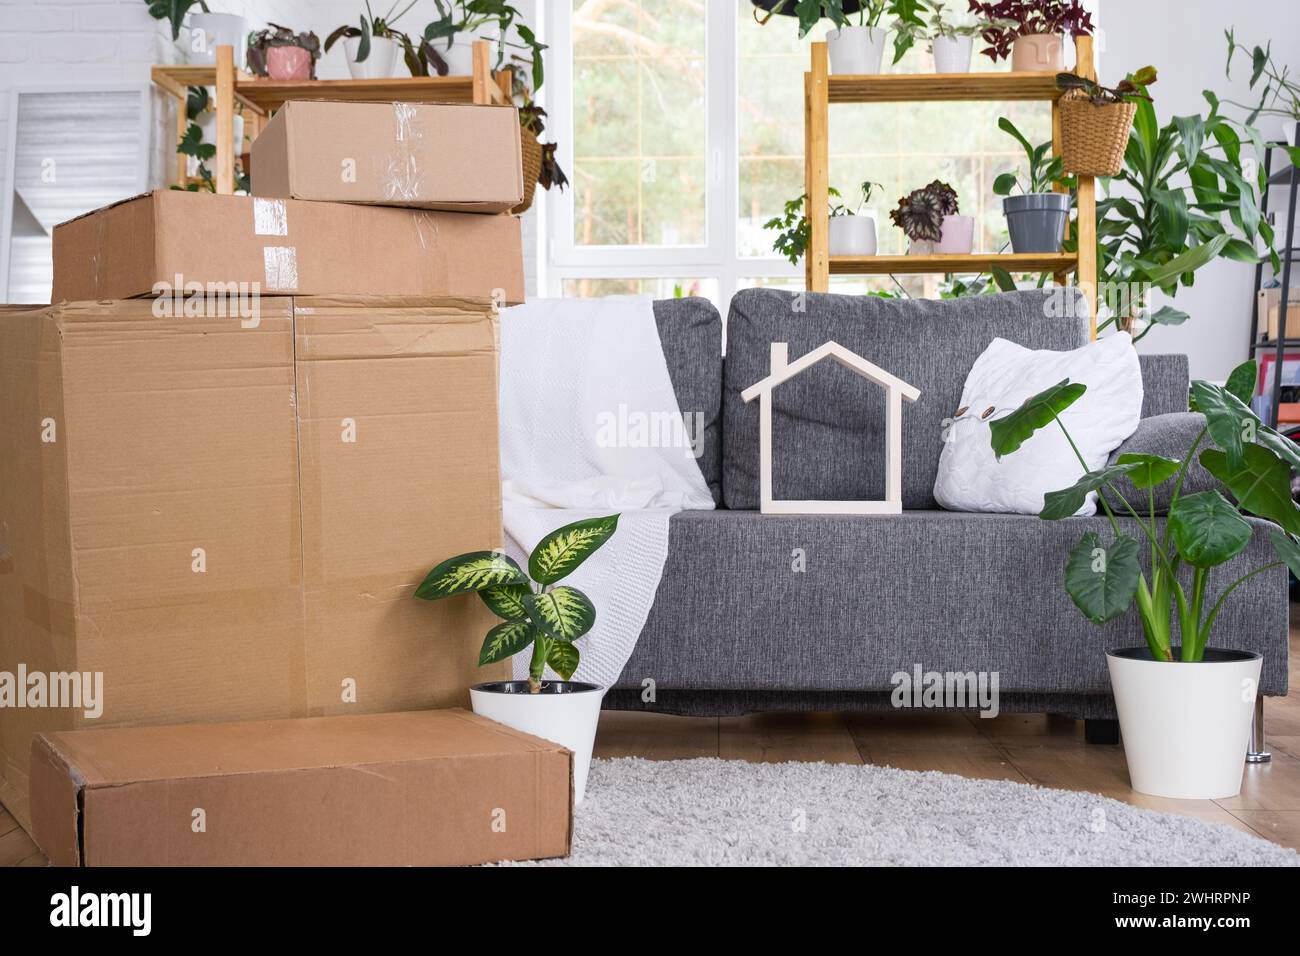 Im Zimmer des neuen Hauses befinden sich Kisten mit Sachen zum Umziehen und Haus Pflanzen. Einweihung, Familieneigentum, Frachttransport Stockfoto